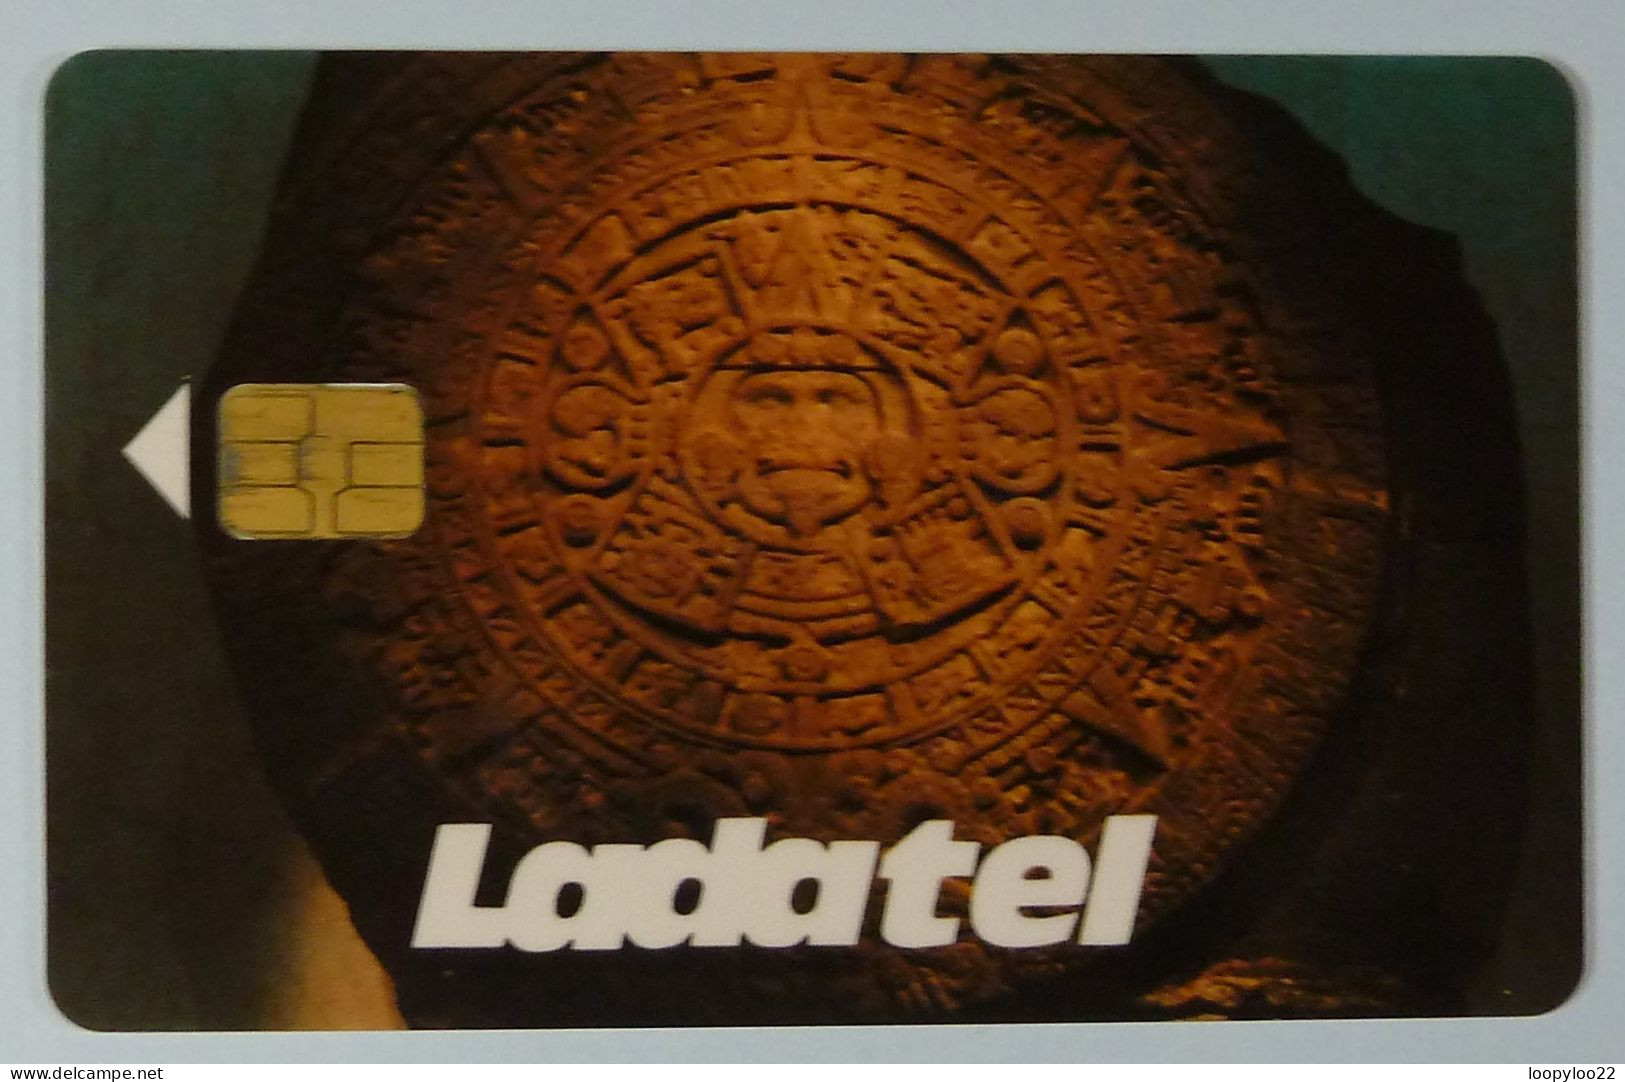 Mexico - Chip - GPT - Test / Trial - 10 000 Pesos - Calendario Azteca - Ladatel - Used - Mexique